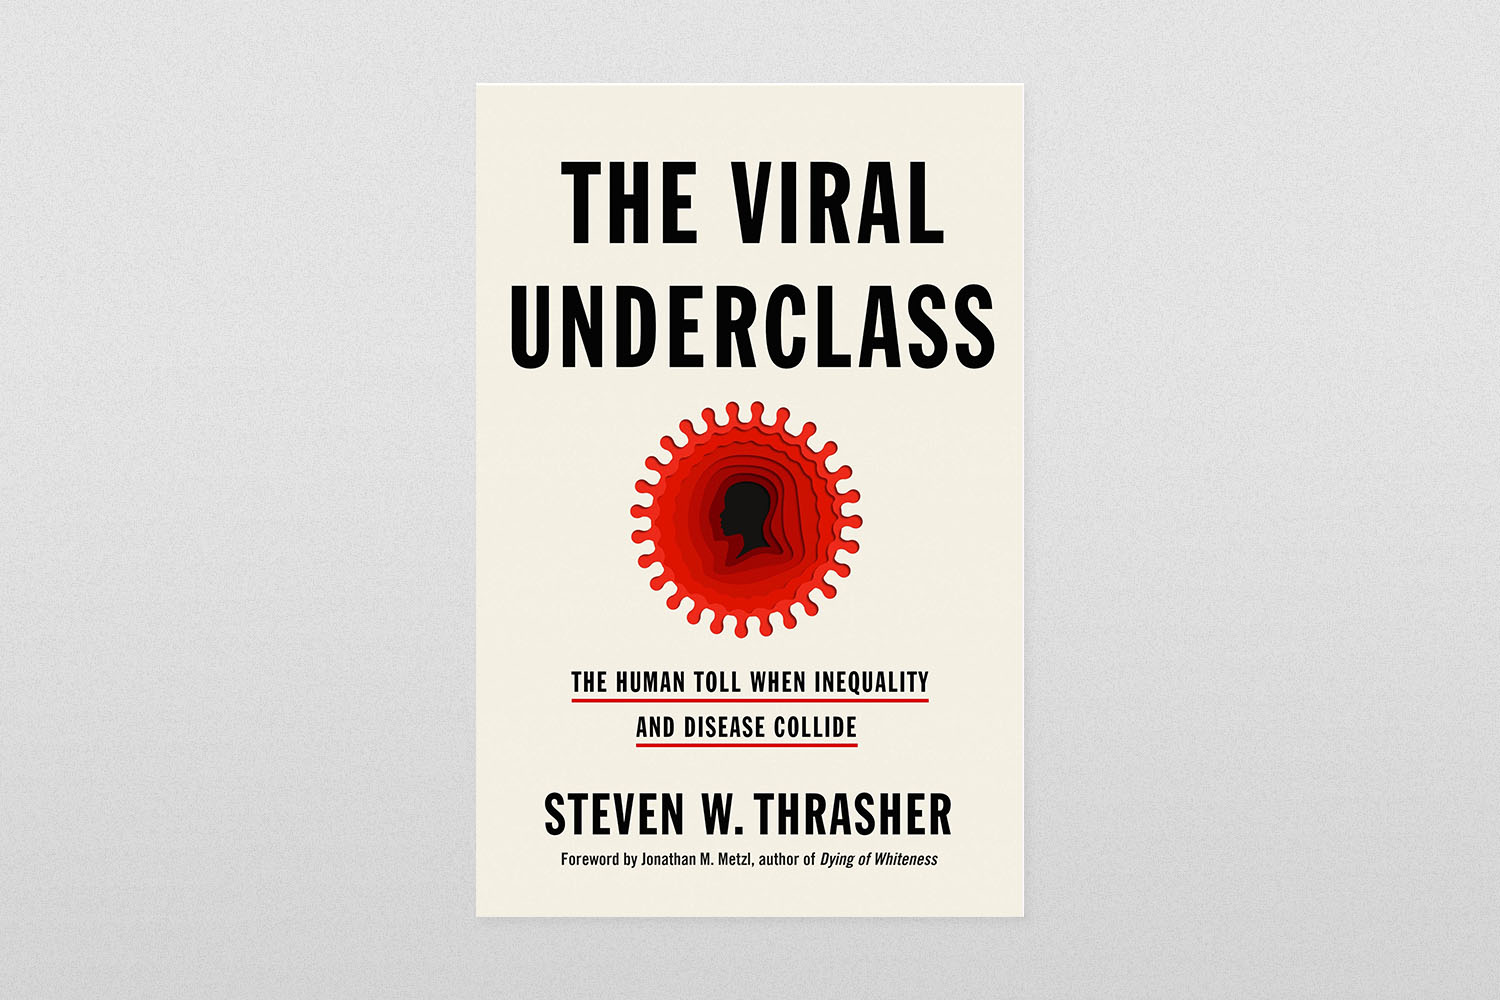 "The Viral Underclass"